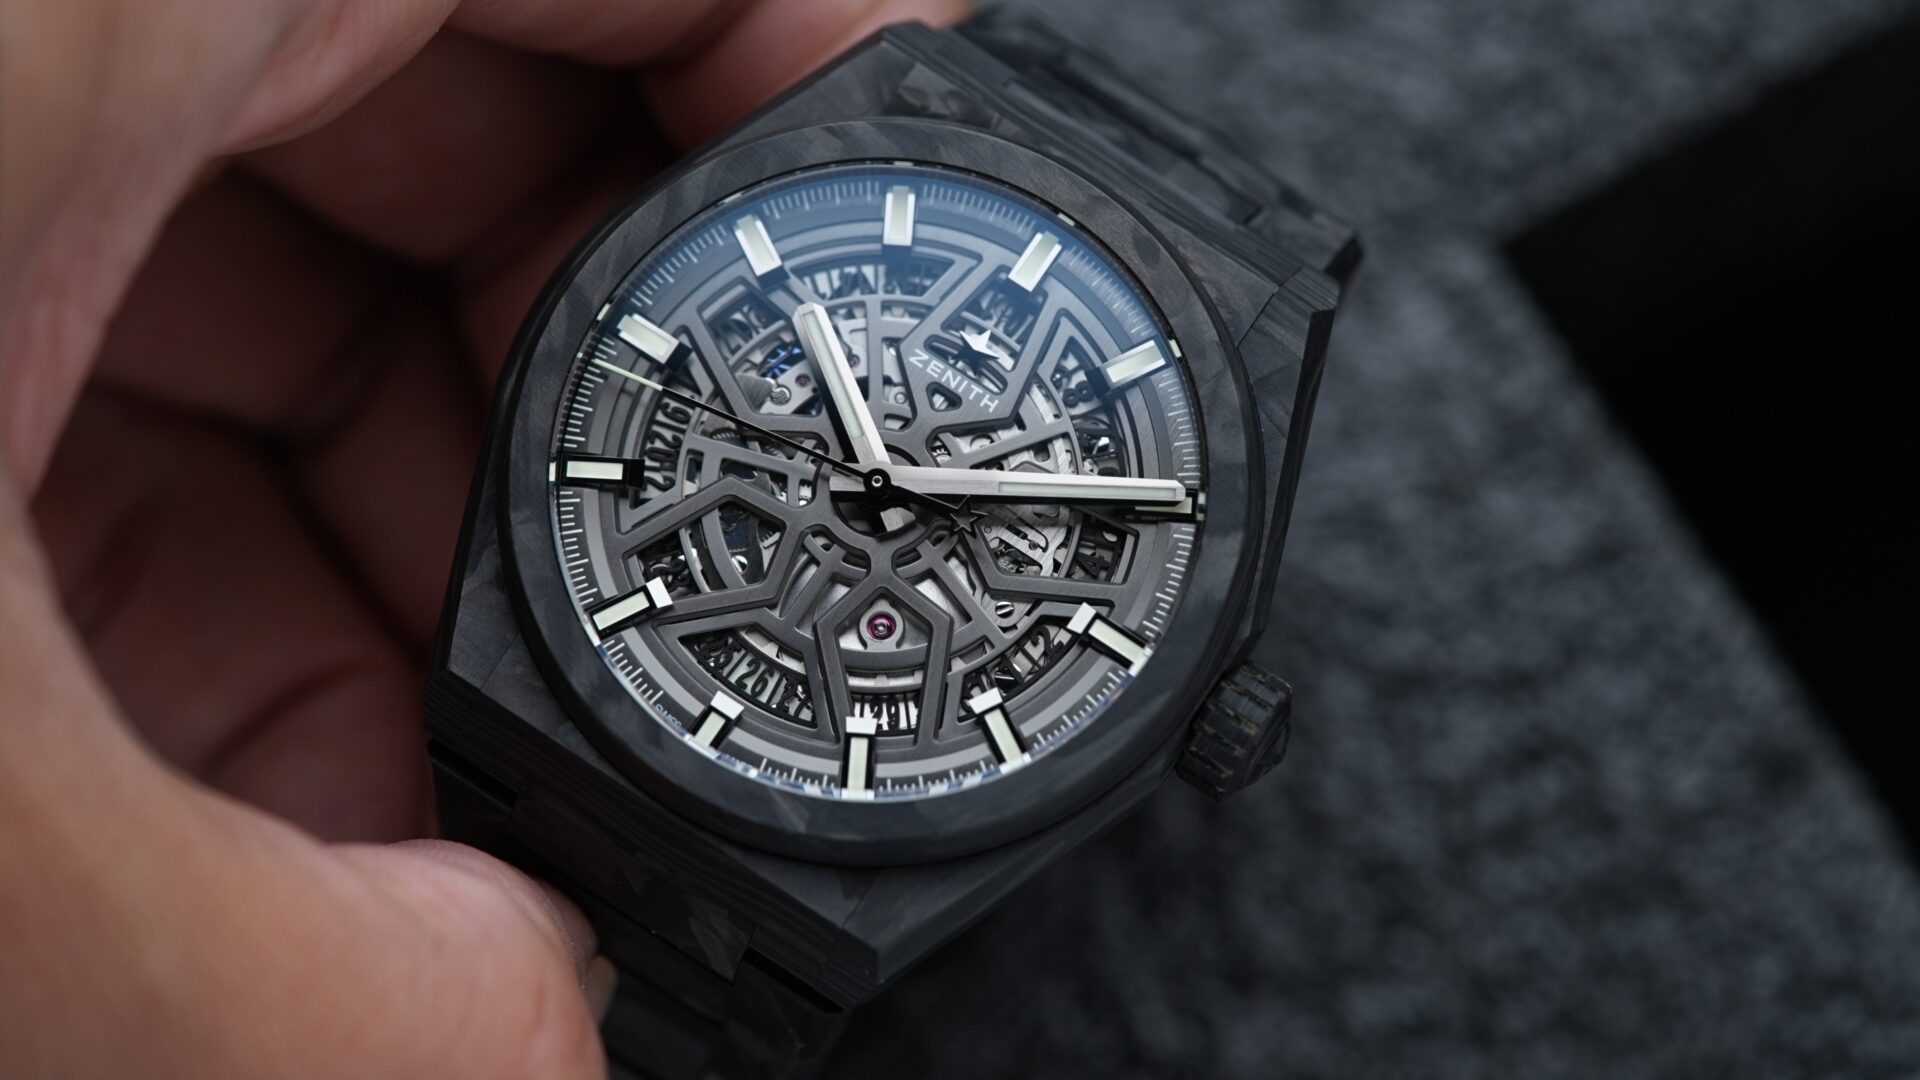 Zenith Defy Classic Carbon Fiber watch being held in hand.